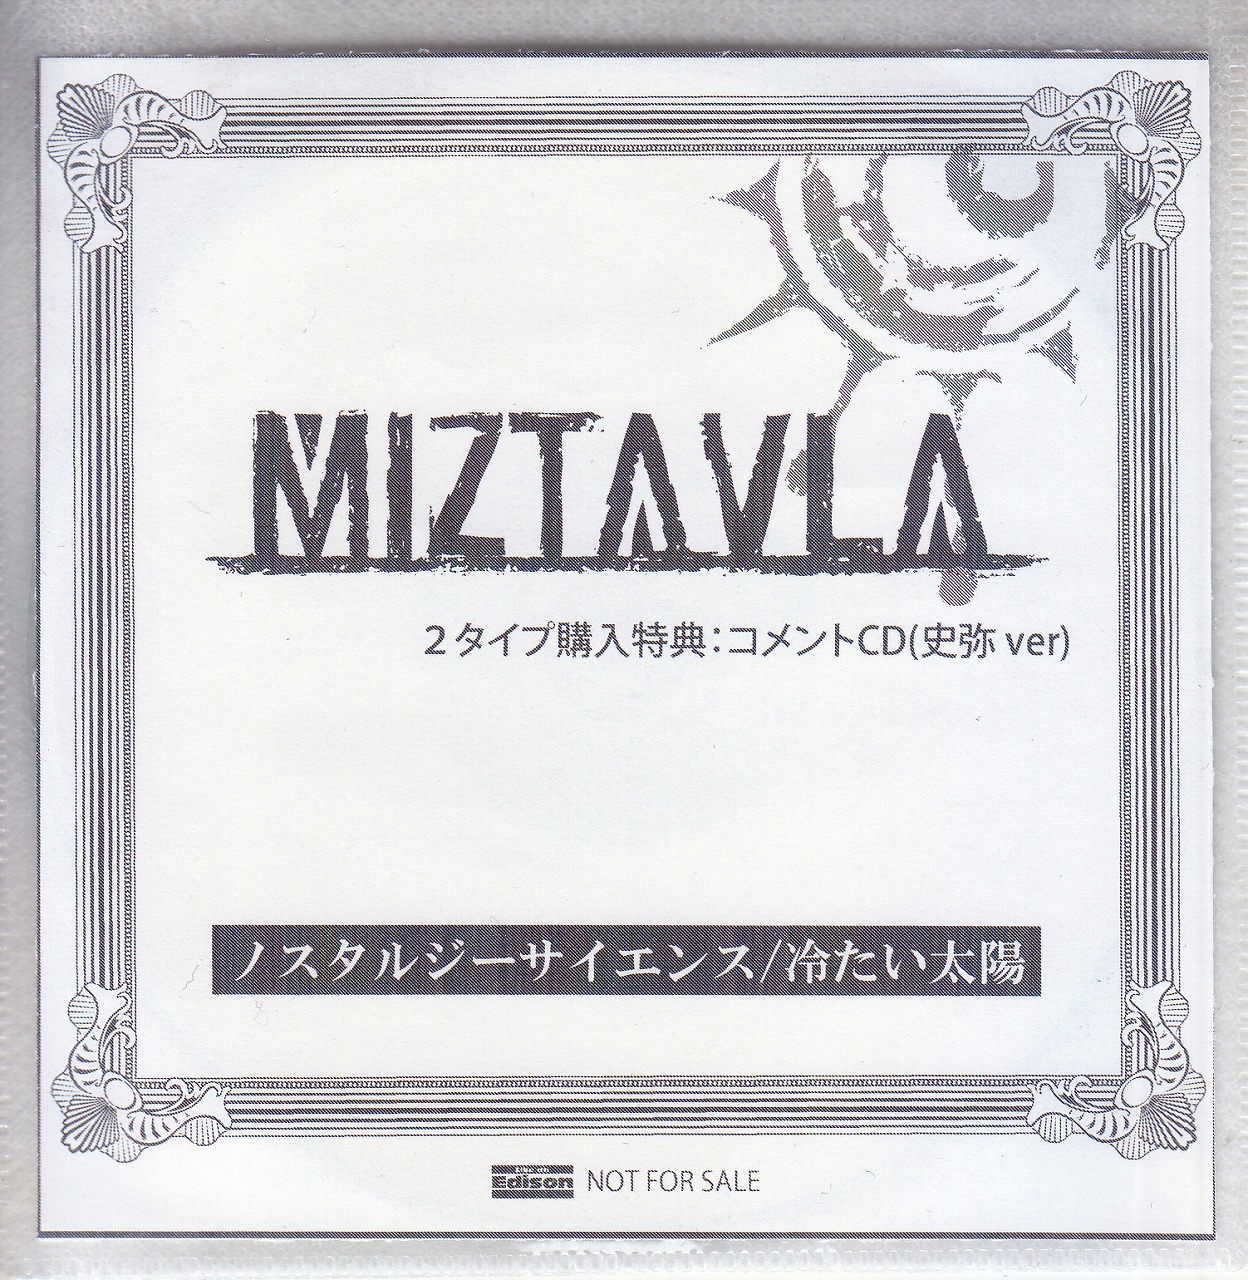 MIZTAVLA ( ミズタブラ )  の CD 【LIKE AN EDISON】ノスタルジーサイエンス/冷たい太陽 2タイプ購入特典:コメントCD(史弥ver)